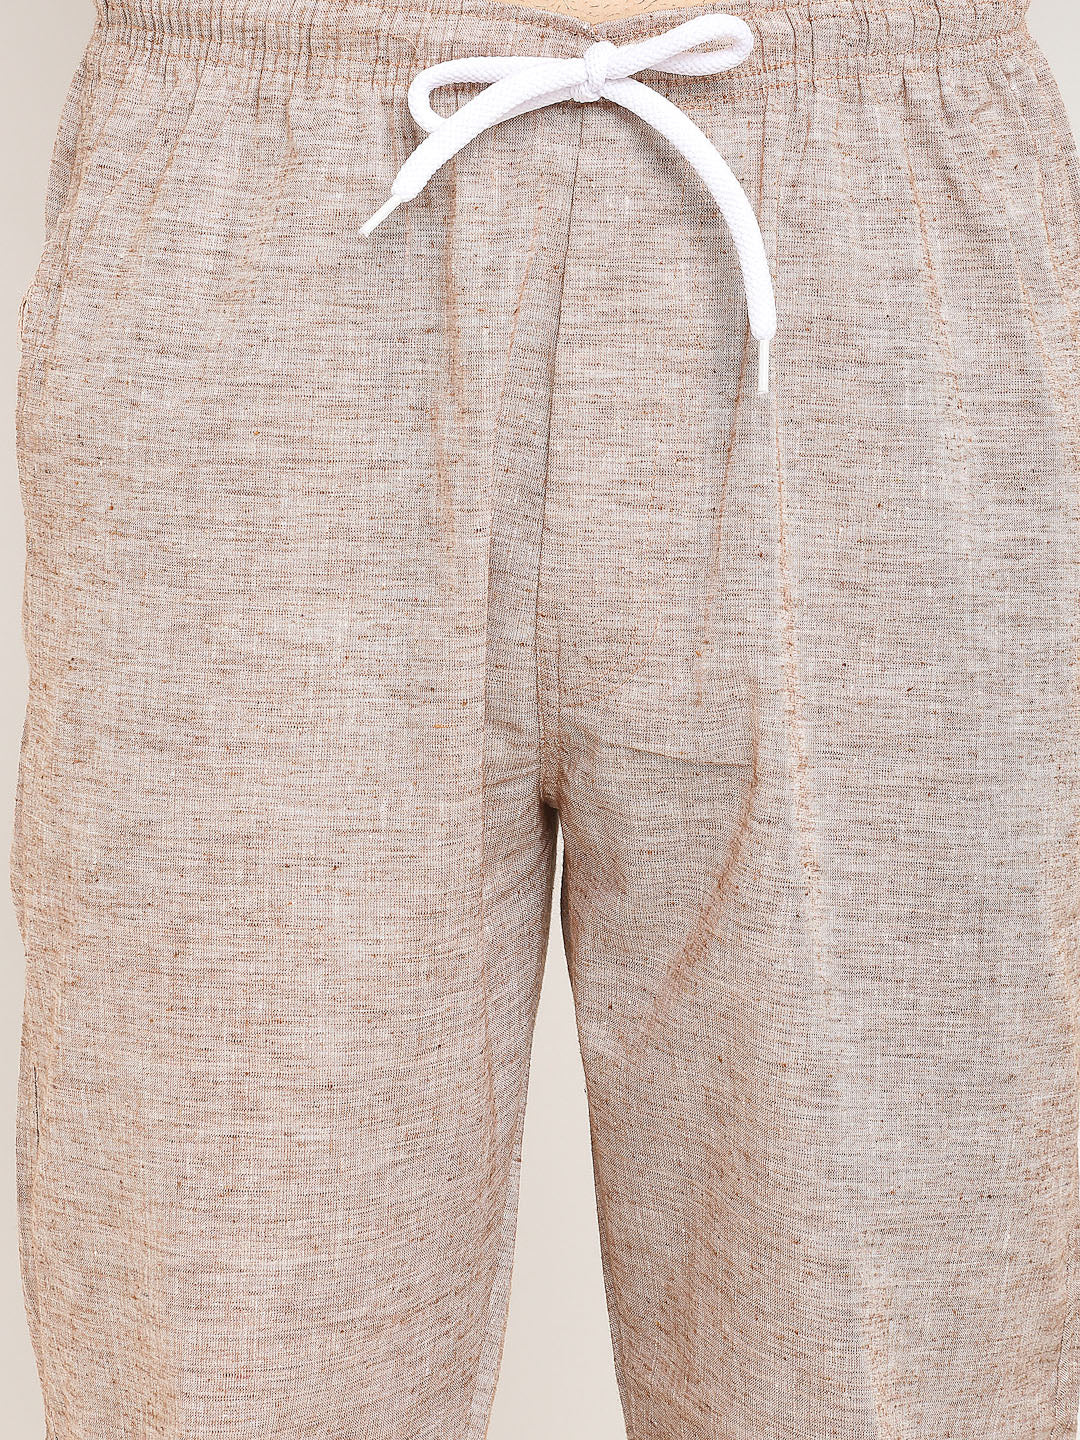 Jainish Men's Brown Linen Cotton Track Pants